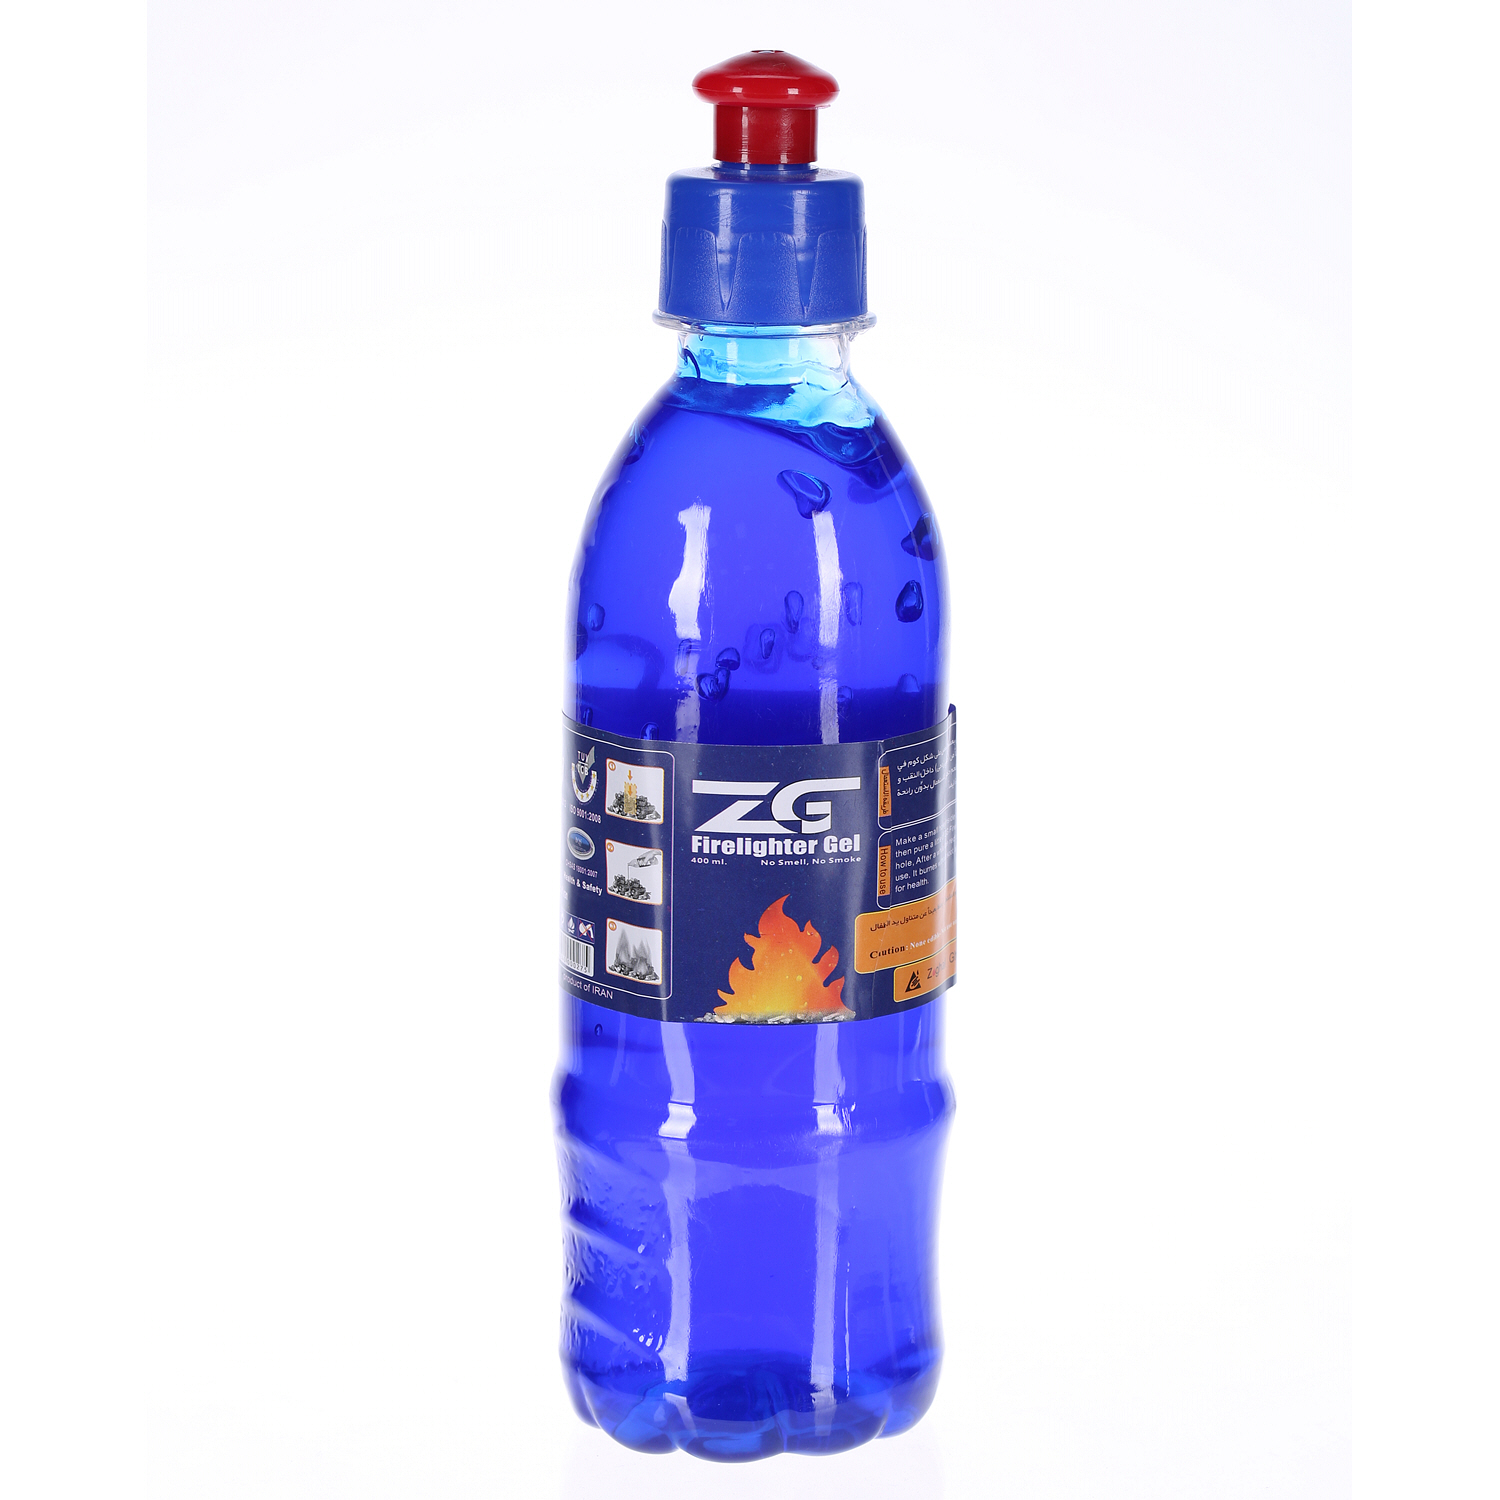 Zg Fire Lighter Gel Smokeless